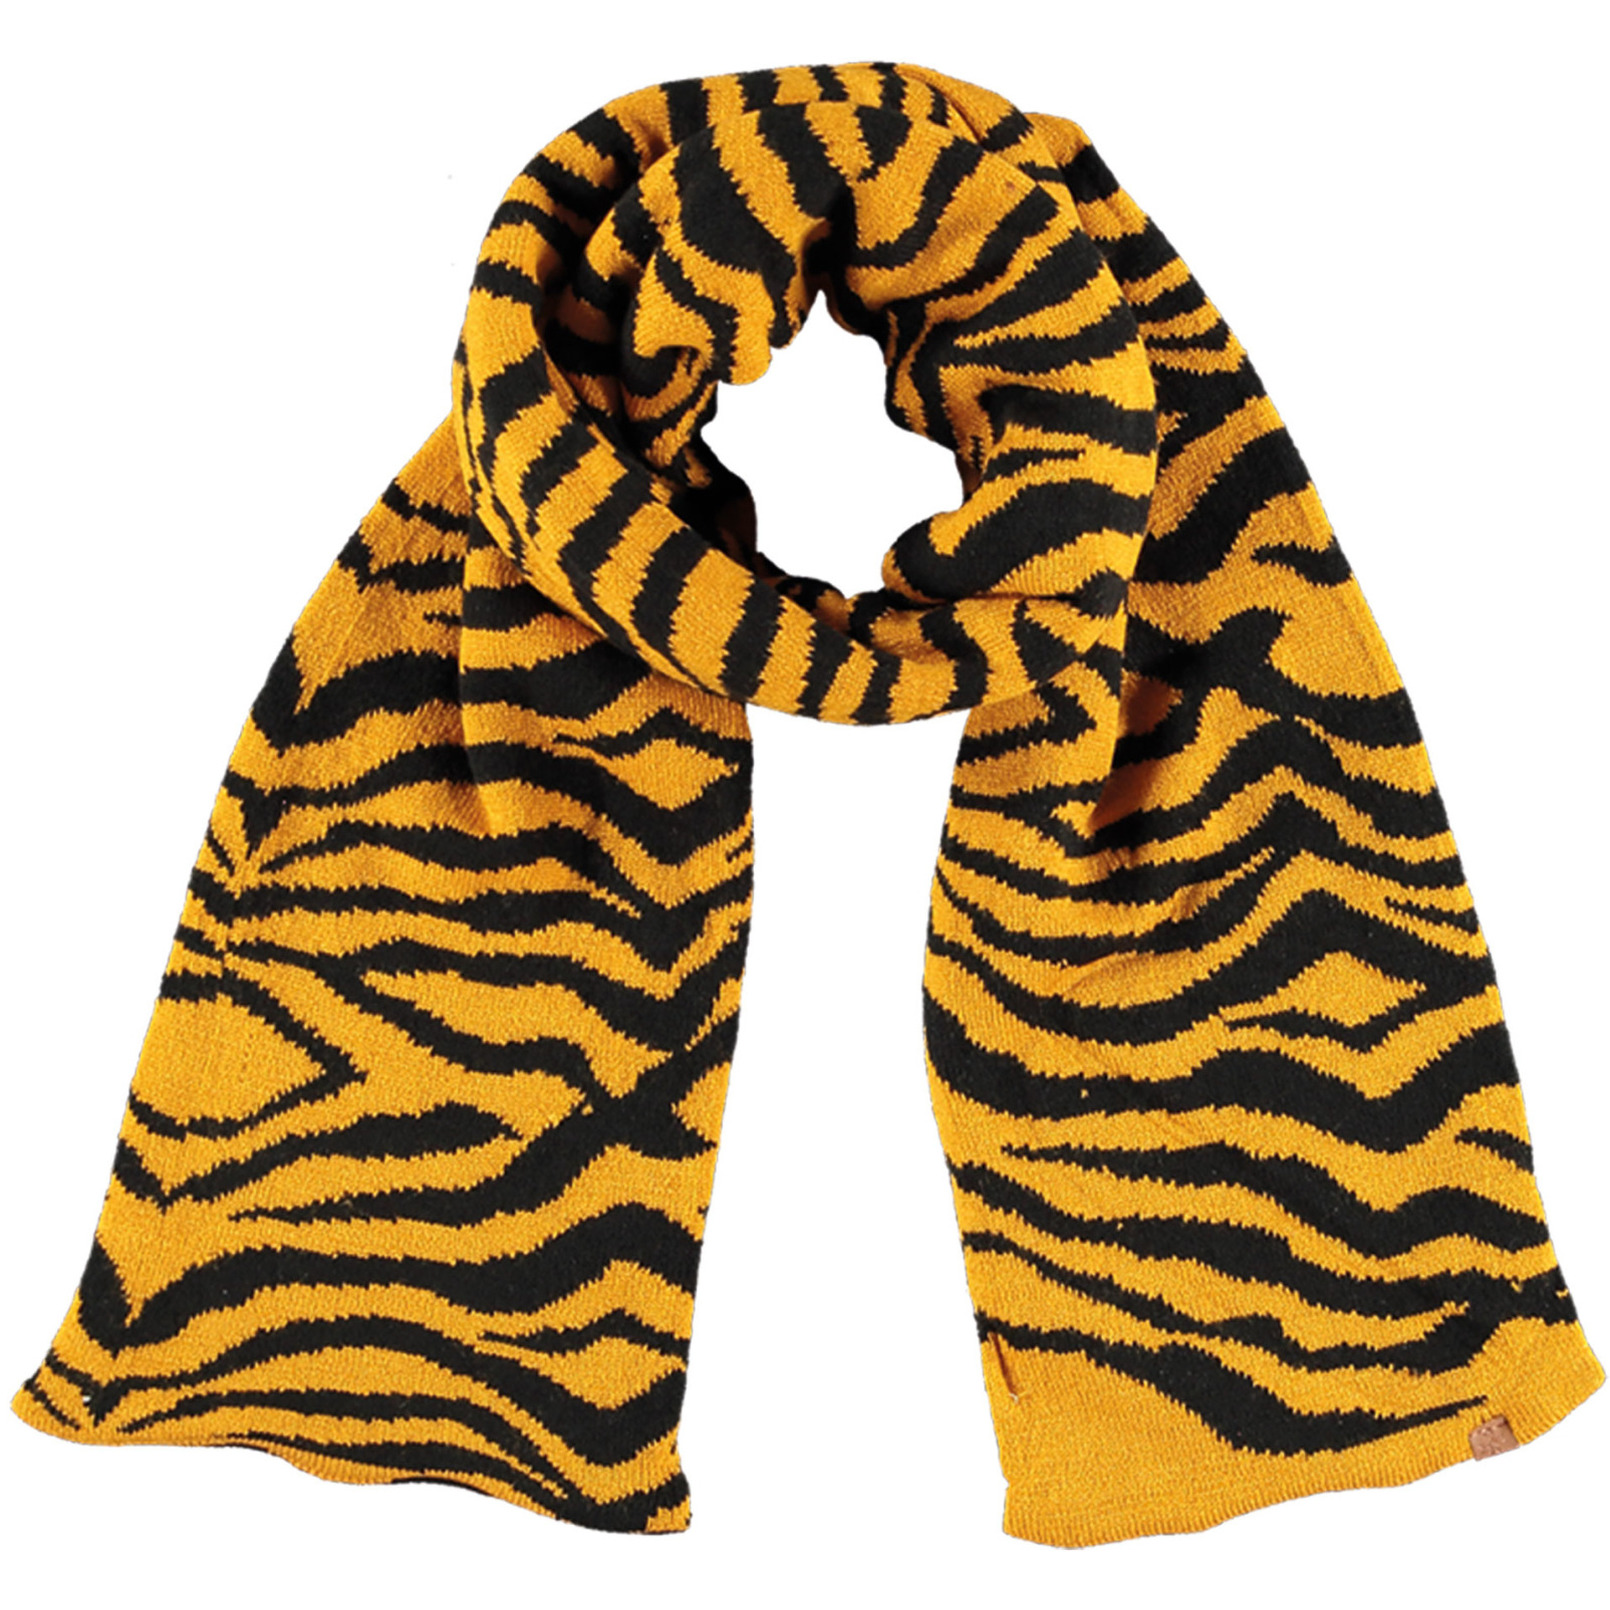 Okergele-zwarte tijger-zebra strepen patroon sjaal-shawl voor meisjes